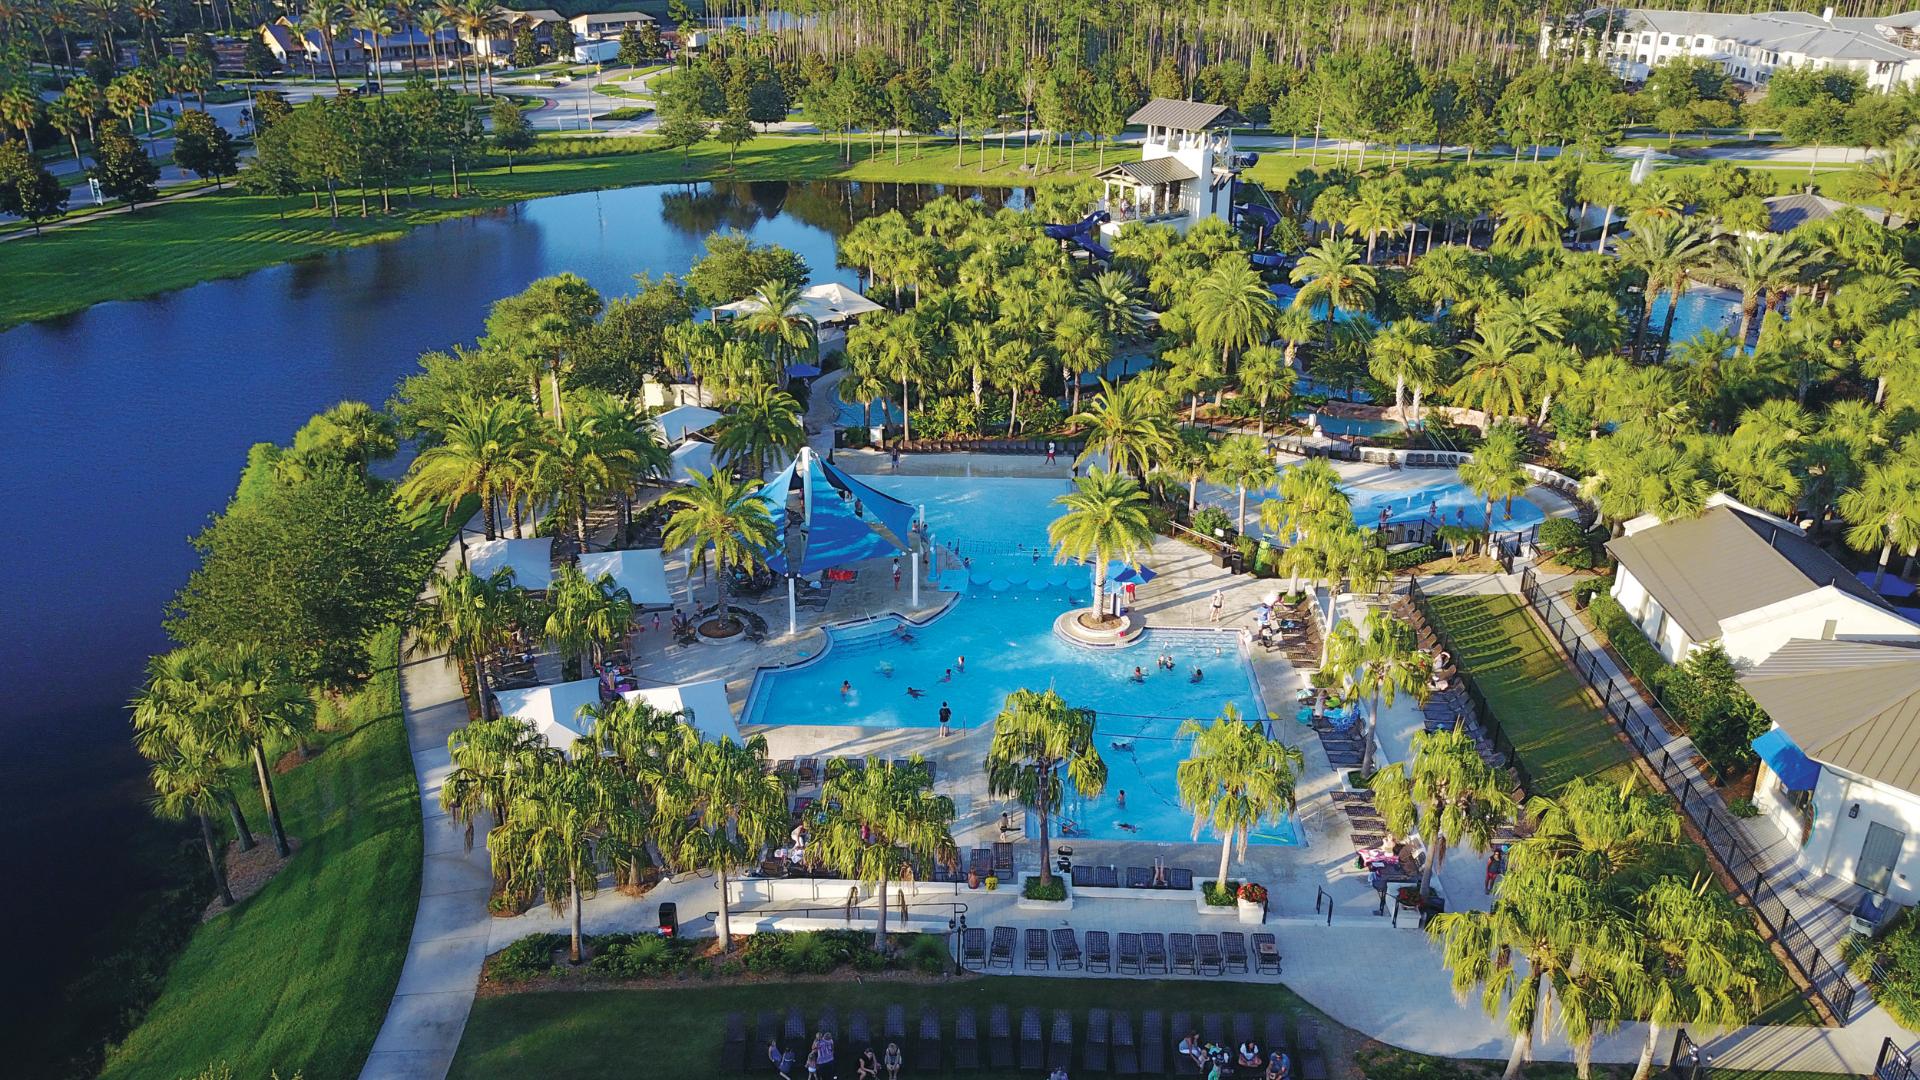 Nocatee's robust resort-style amenities